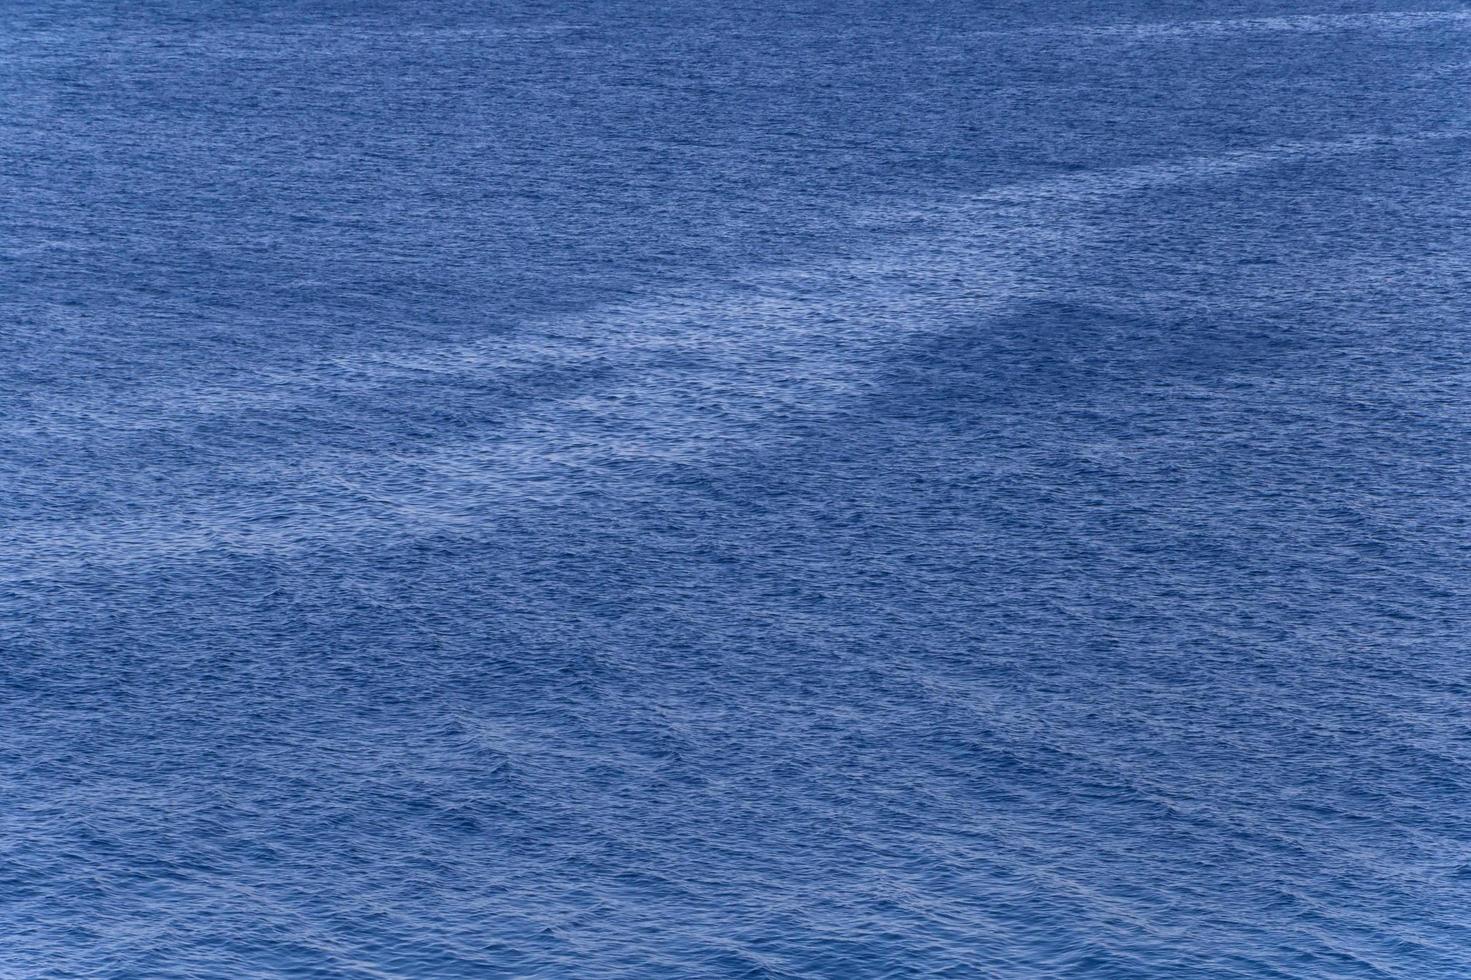 azul abstrato superfície do mar ondas foto